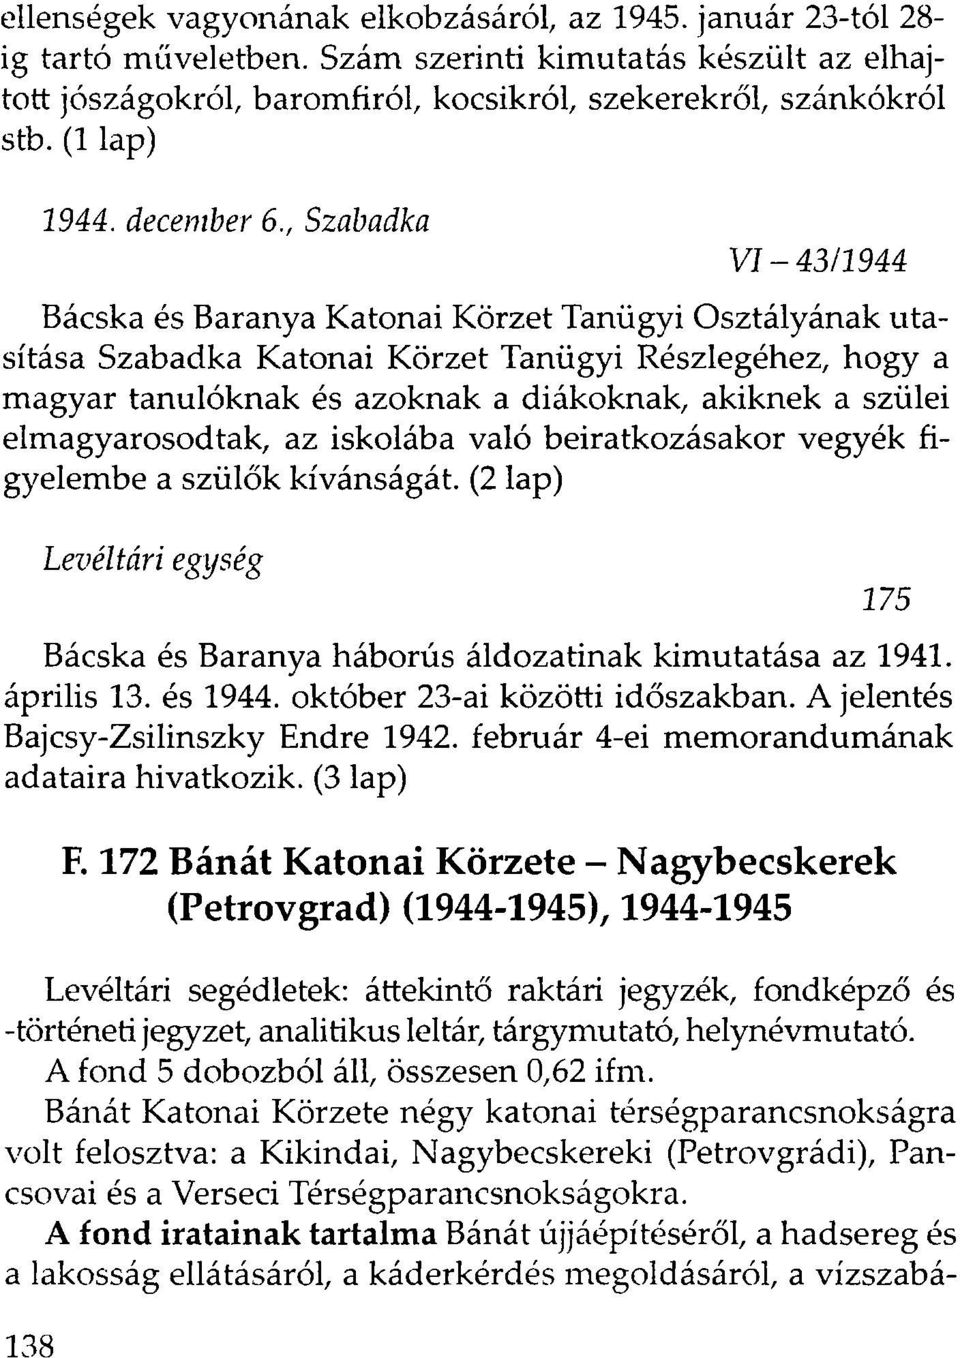 , Szabadka VI-43/1944 Bácska és Baranya Katonai Körzet Tanügyi Osztályának utasítása Szabadka Katonai Körzet Tanügyi Részlegéhez, hogy a magyar tanulóknak és azoknak a diákoknak, akiknek a szülei